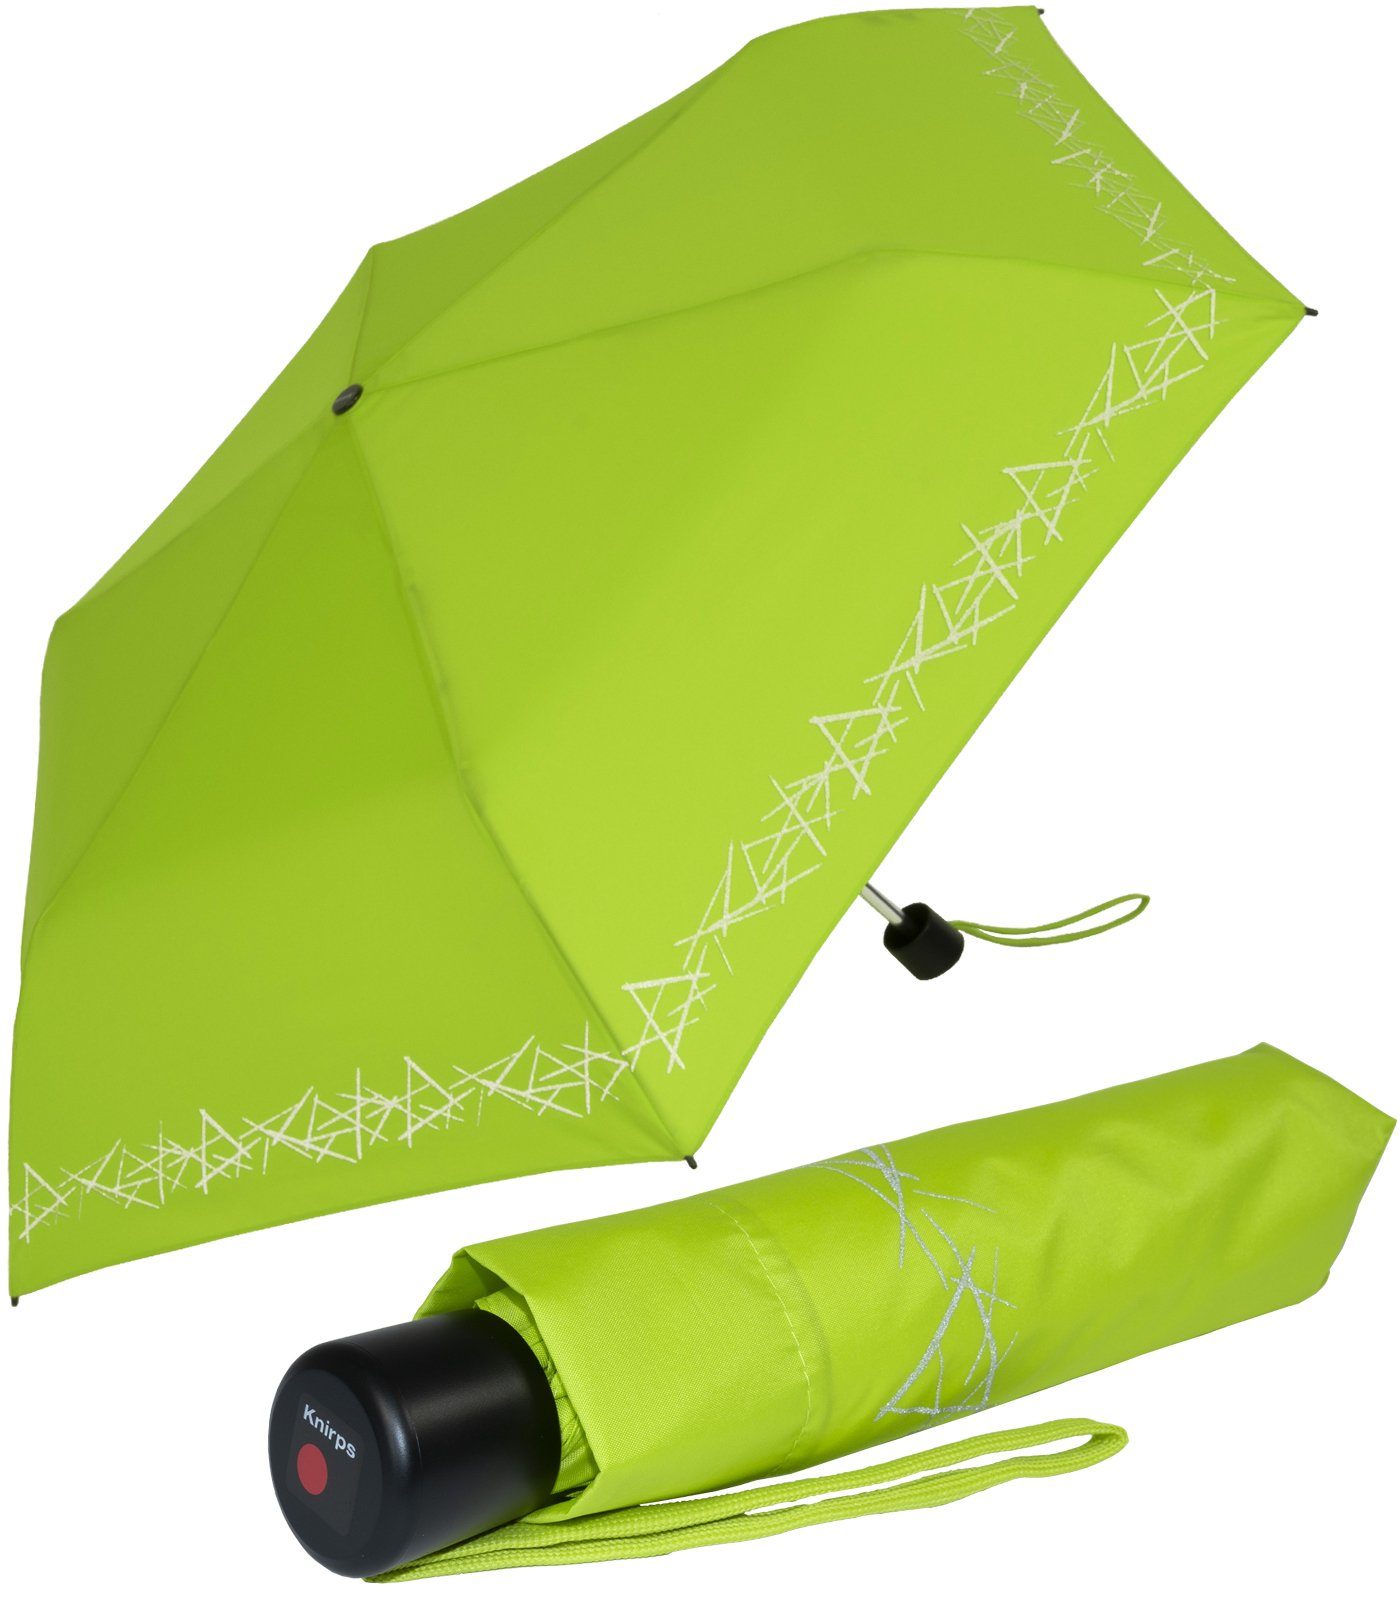 Knirps® Taschenregenschirm Kinderschirm 4Kids reflective mit Reflexborte, Sicherheit auf dem Schulweg, leicht, uni, limette